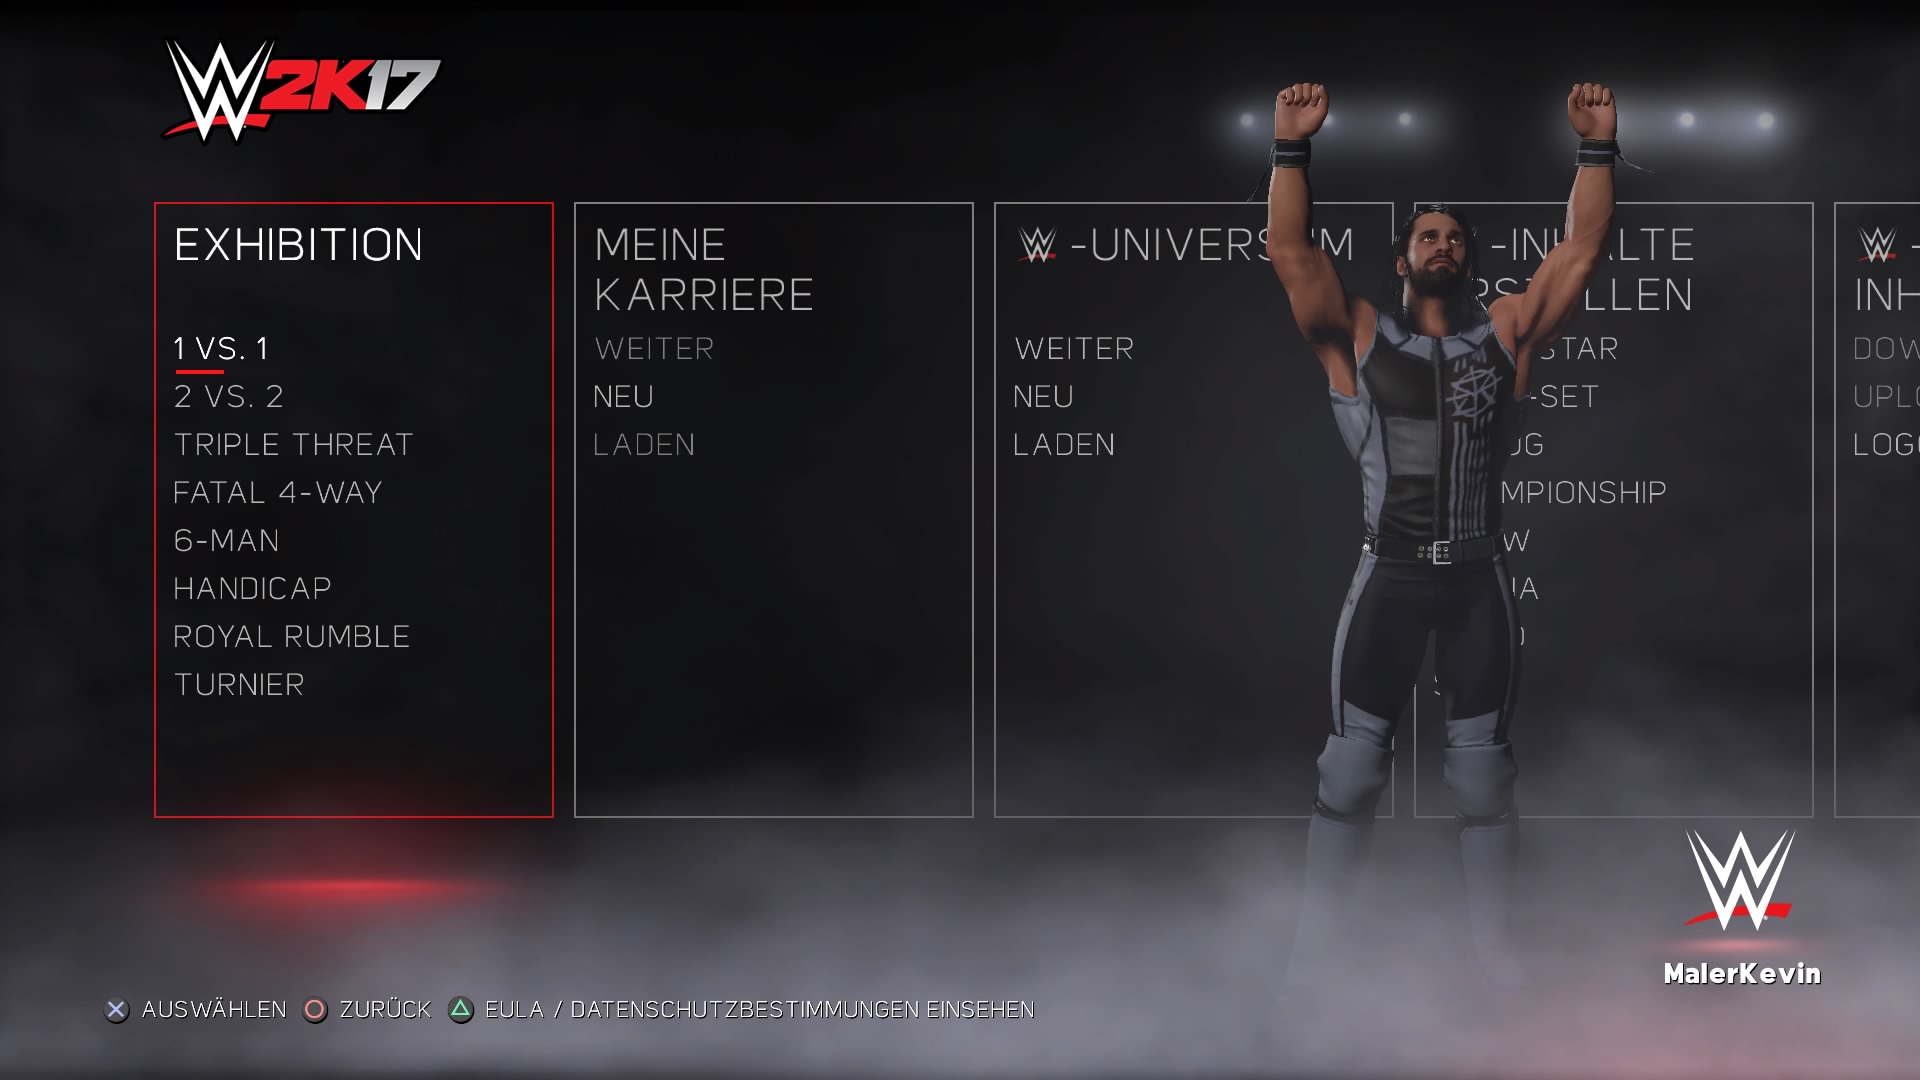 Das Menü von WWE 2K17 ist übersichtlich gestaltet.